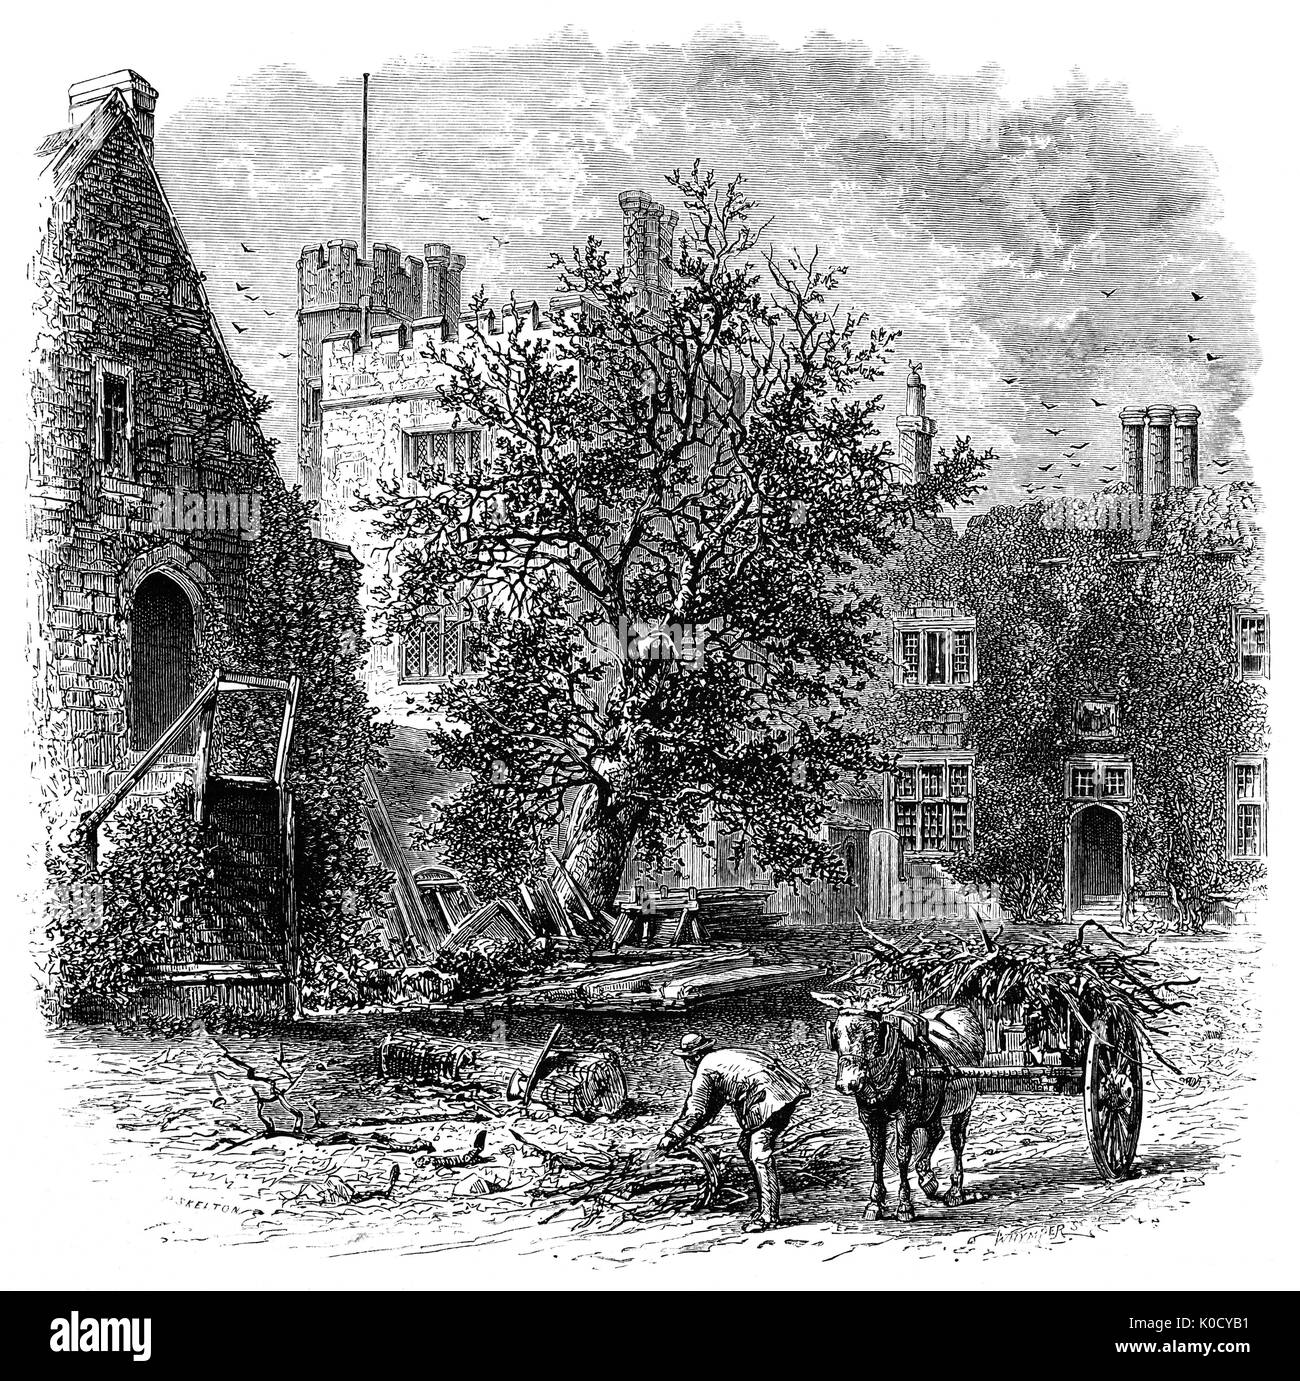 1870 : la collecte du bois à Penshurst Place construite en 1341, est un bâtiment historique près de Tonbridge, Kent, Angleterre. C'est la maison ancestrale de la famille de Sidney, et a été le lieu de naissance du grand poète élisabéthain, courtisan et soldat, sir Philip Sidney. La maison médiévale d'origine est l'une des plus complètes des exemples de 14e siècle l'architecture domestique en Angleterre. Banque D'Images